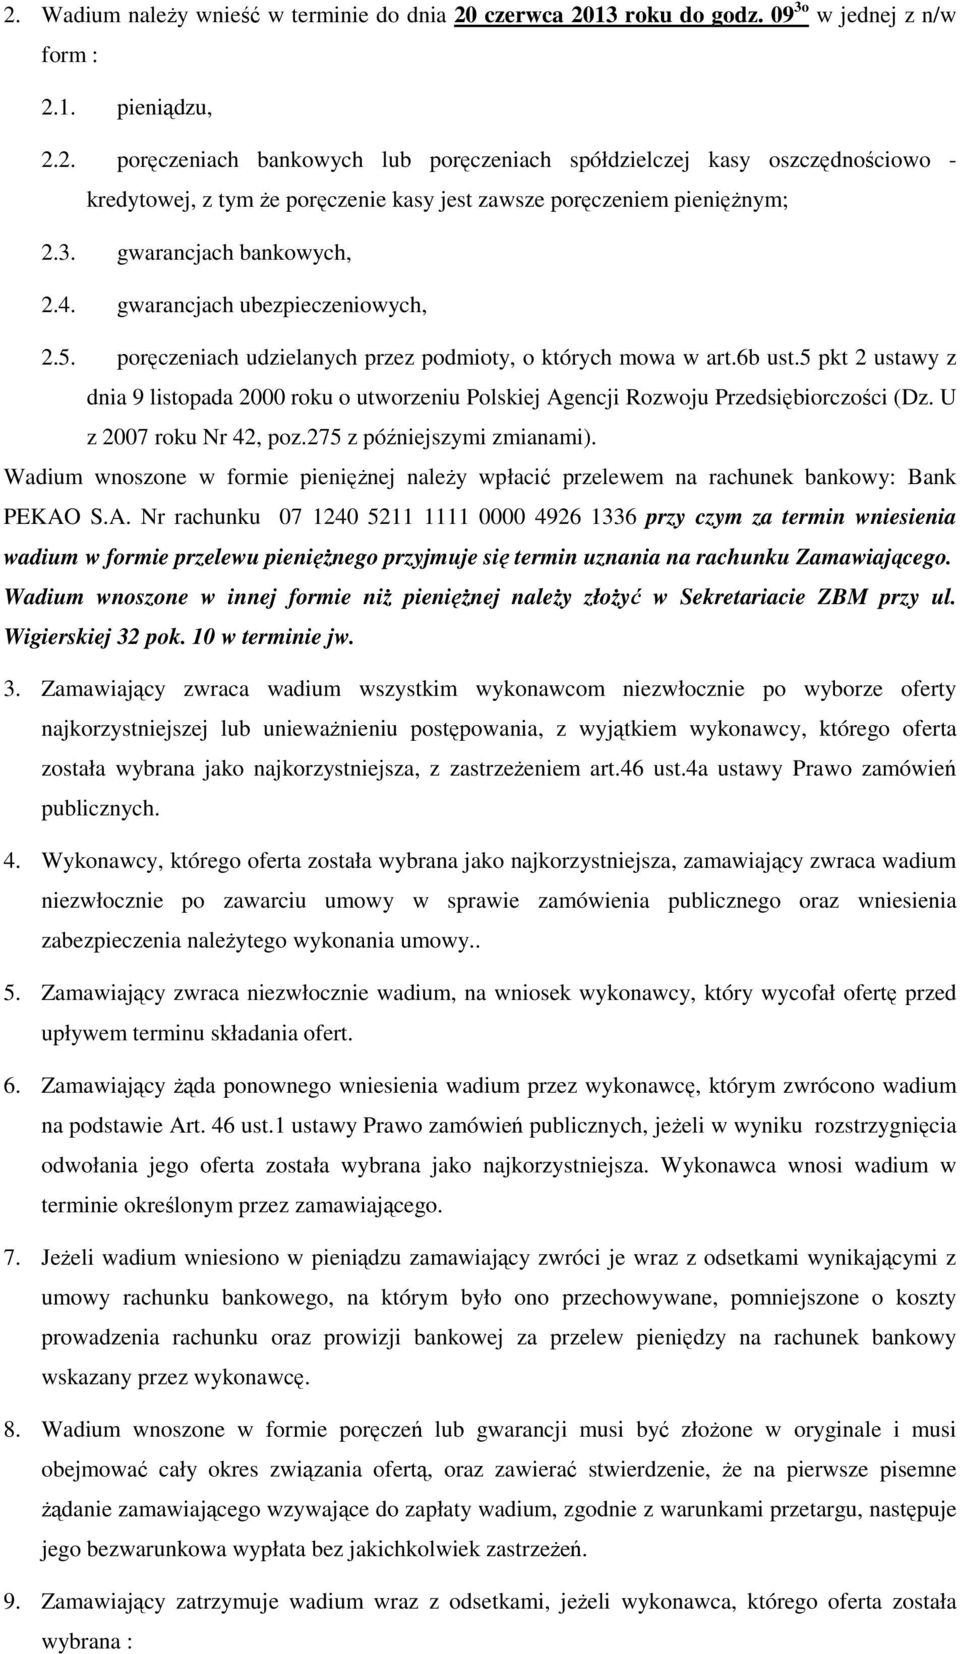 5 pkt 2 ustawy z dnia 9 listopada 2000 roku o utworzeniu Polskiej Agencji Rozwoju Przedsiębiorczości (Dz. U z 2007 roku Nr 42, poz.275 z późniejszymi zmianami).